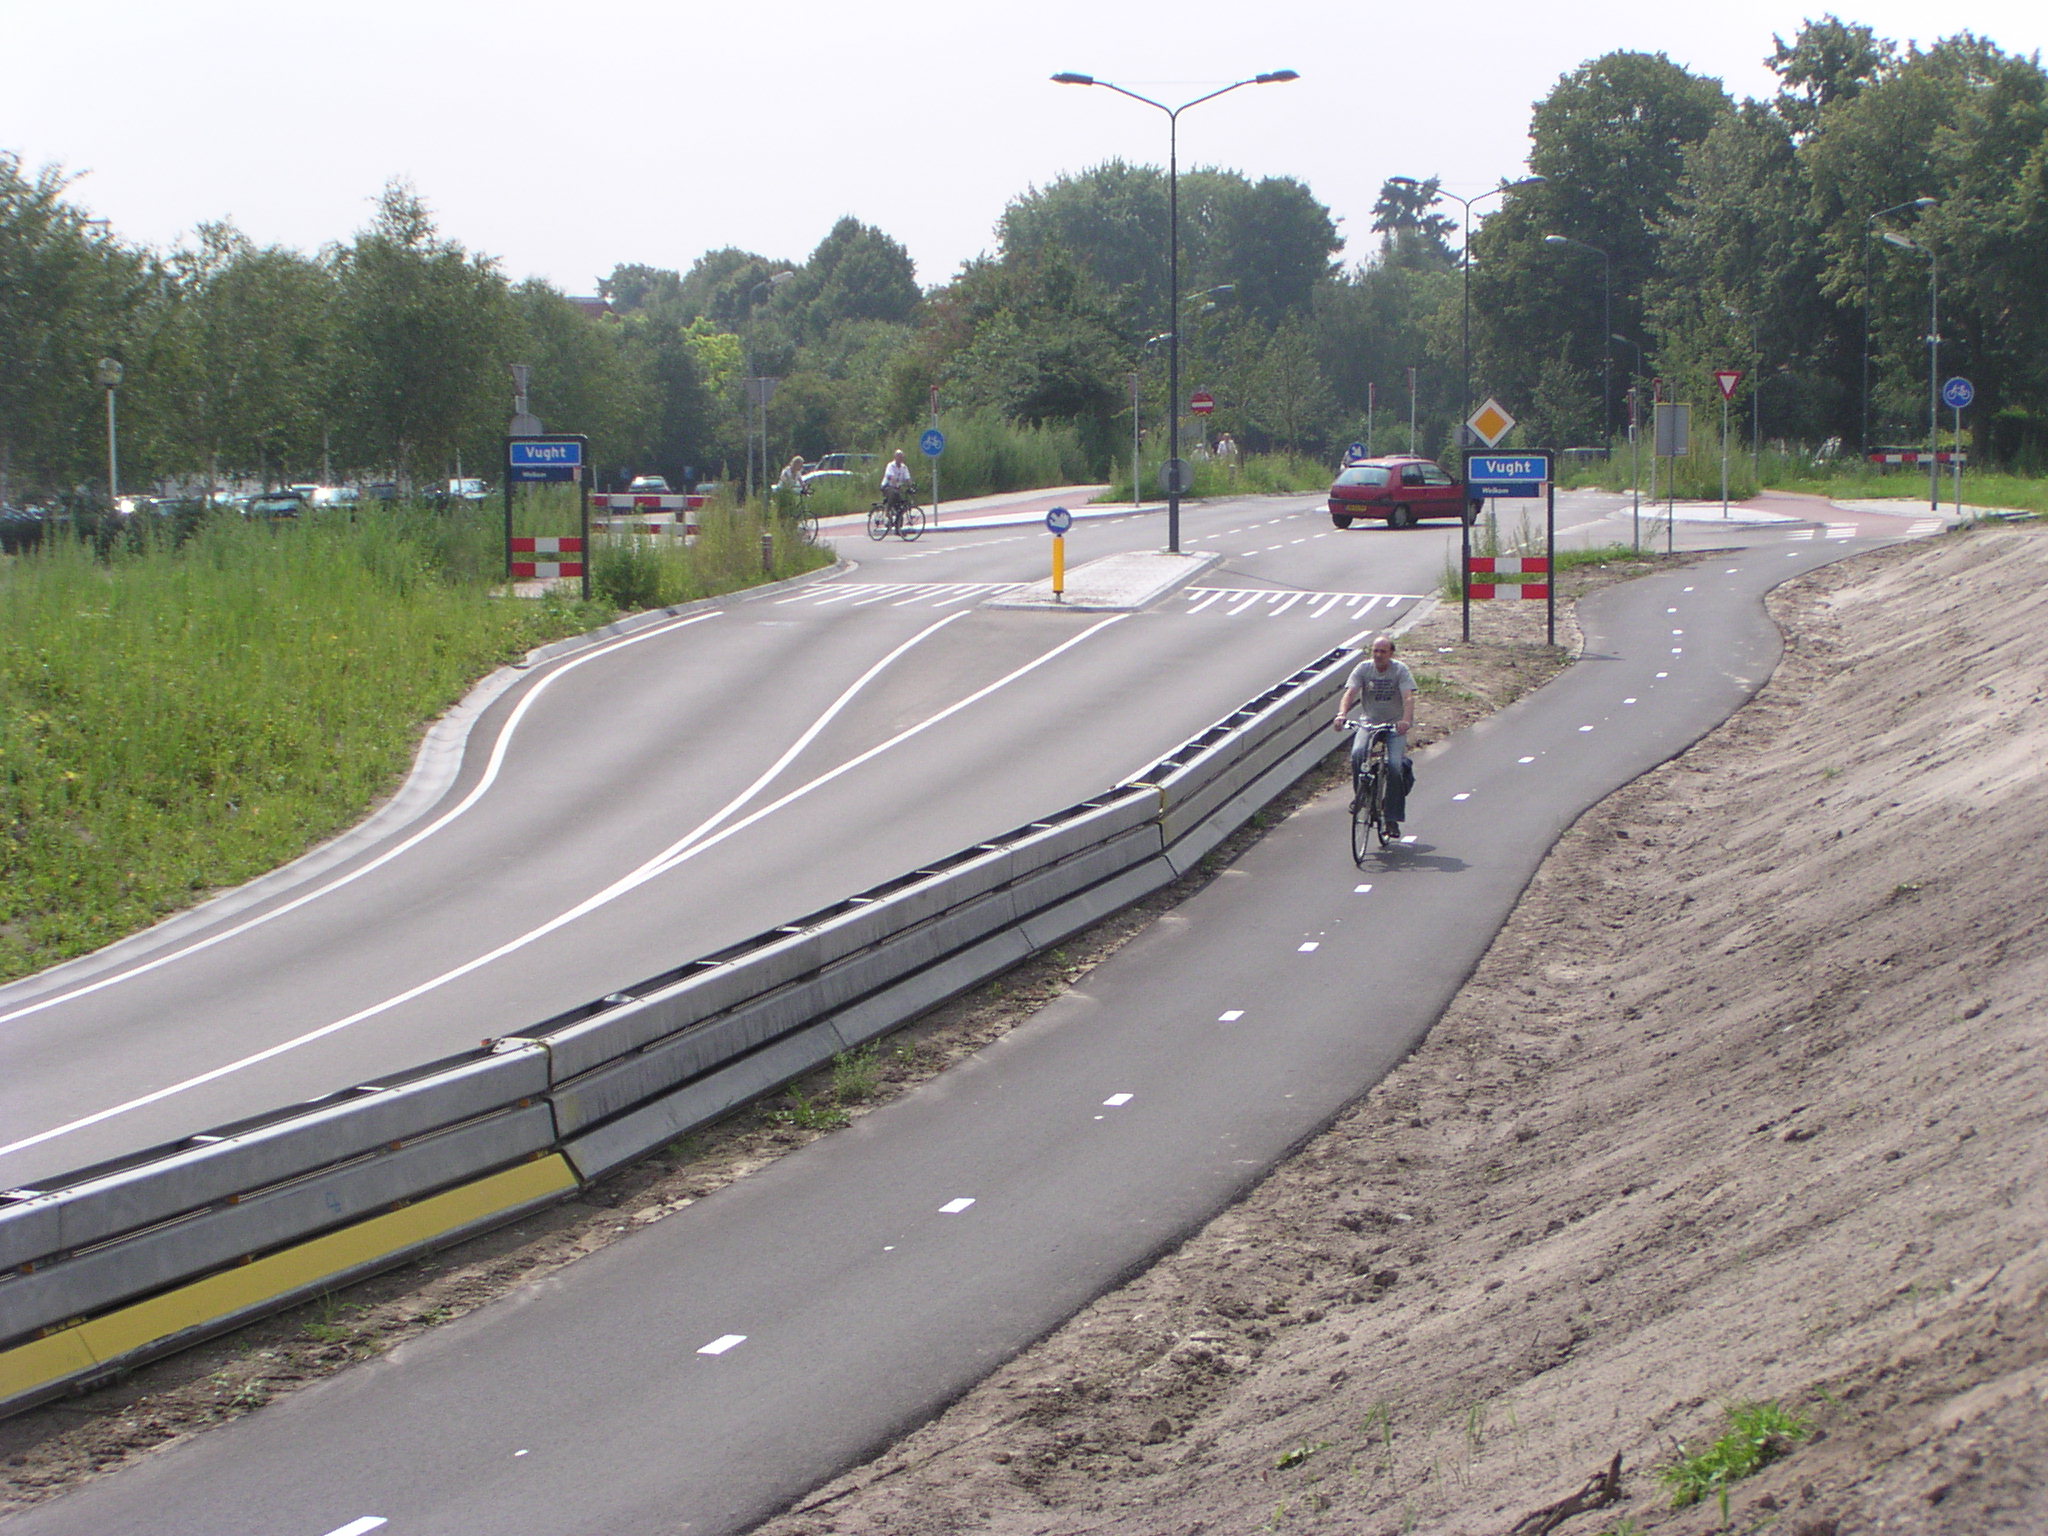 p7300040.jpg - Verlegde Bosscheweg vanuit Vught. De fietsers hebben een geheel geasfalteerd pad gekregen dat doorloopt tot aan de kom 's Hertogenbosch. Linksboven de nieuwe ontsluiting van hotel Vught.